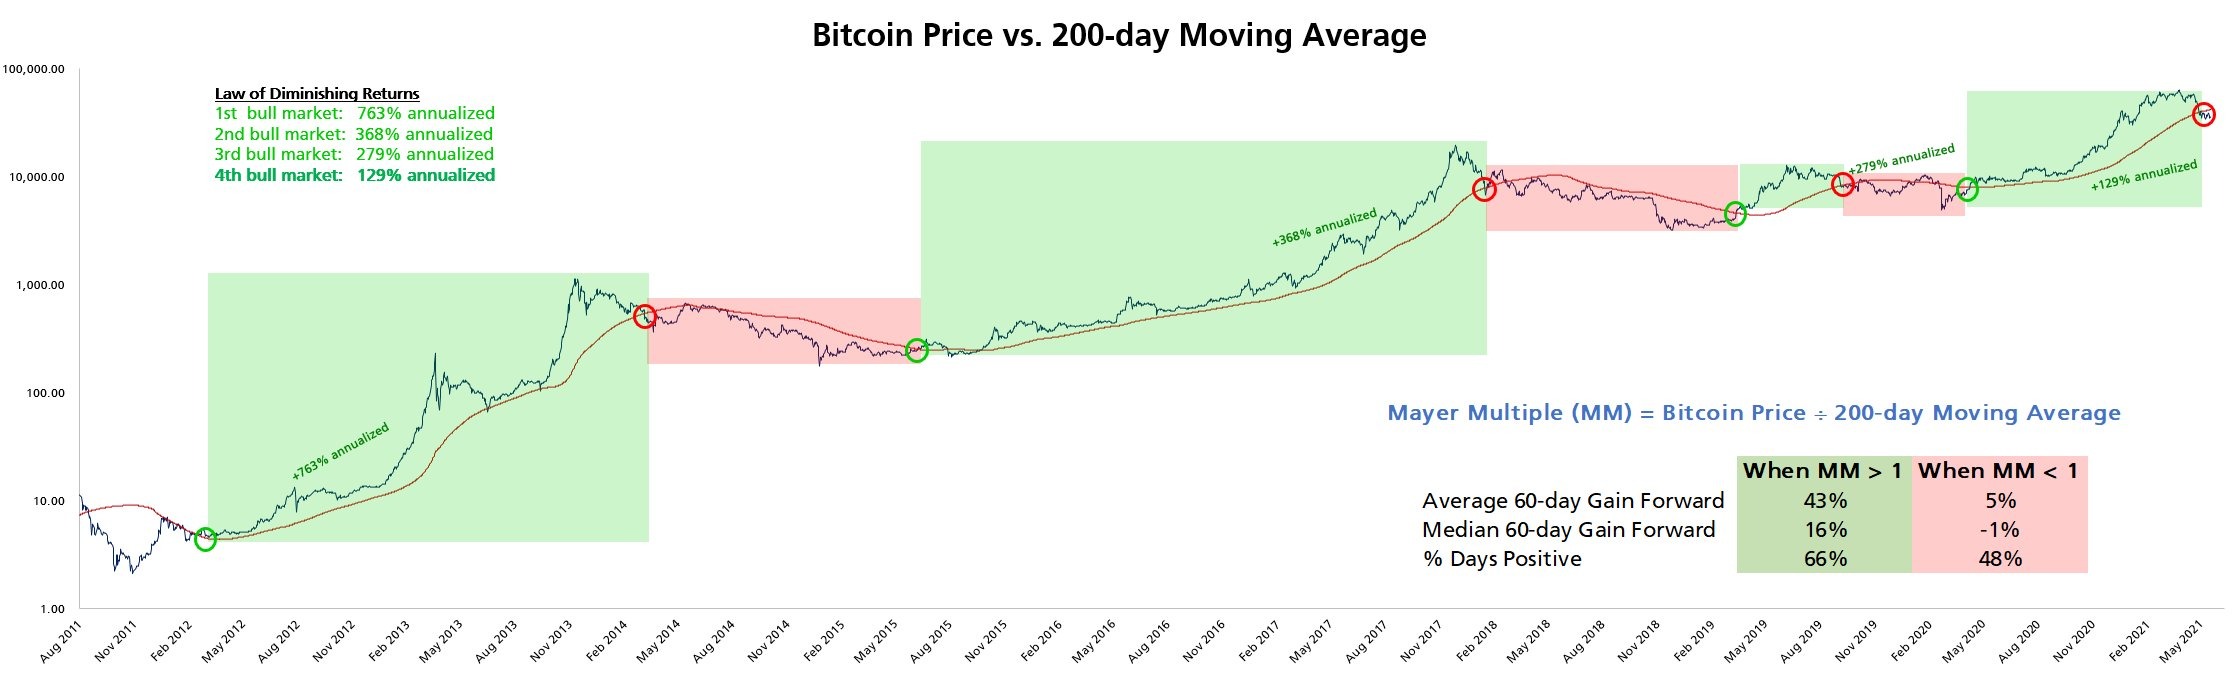 Preço do Bitcoin pode cair abaixo de $30K, avisa trader, após 9% de perda diária